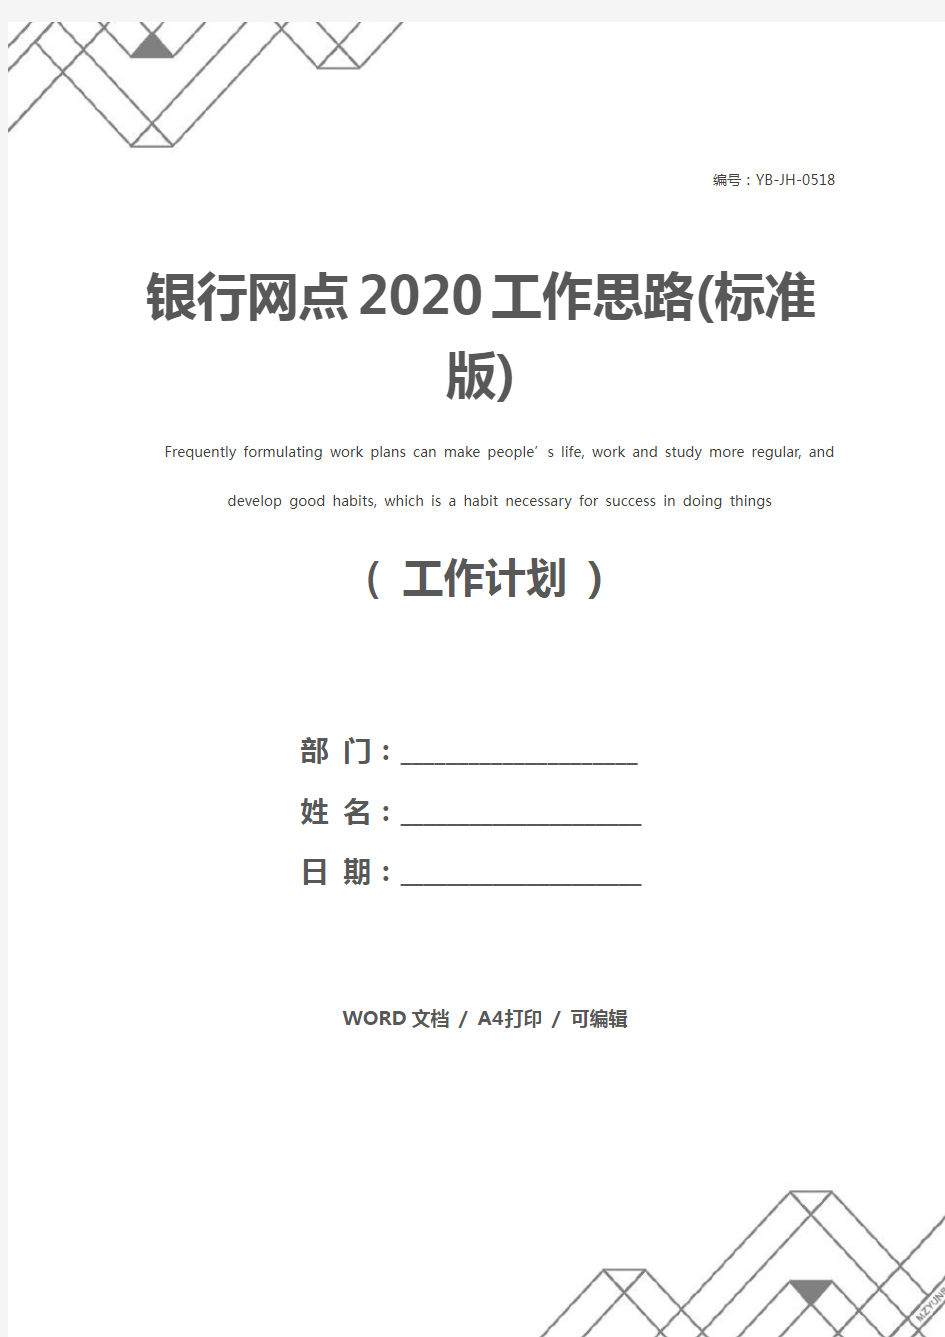 银行网点2020工作思路(标准版)